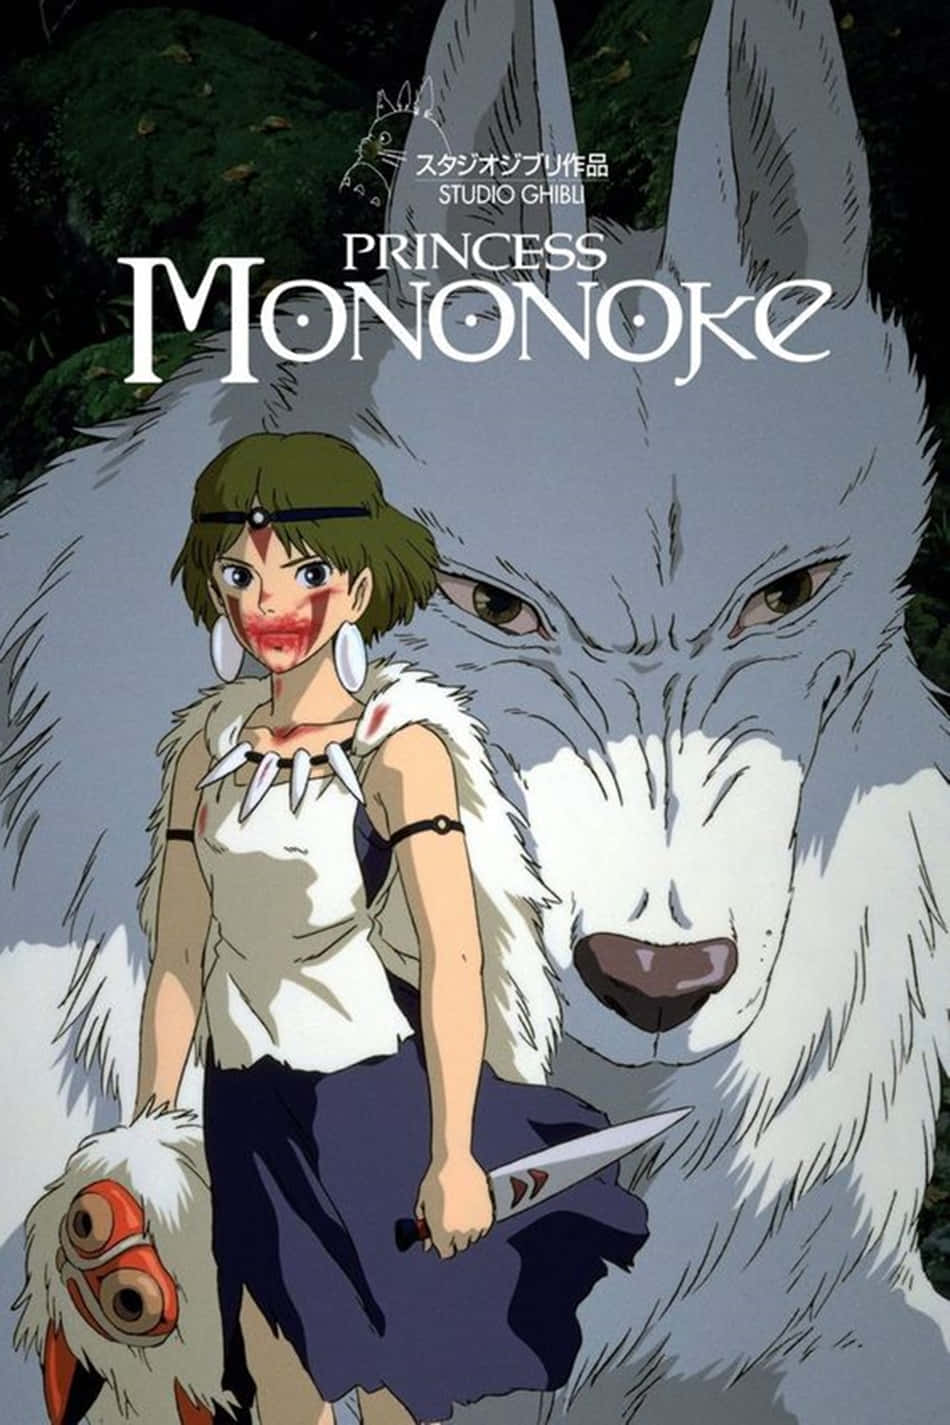 Vargtjejprincess Mononoke Studio Ghibli Wallpaper